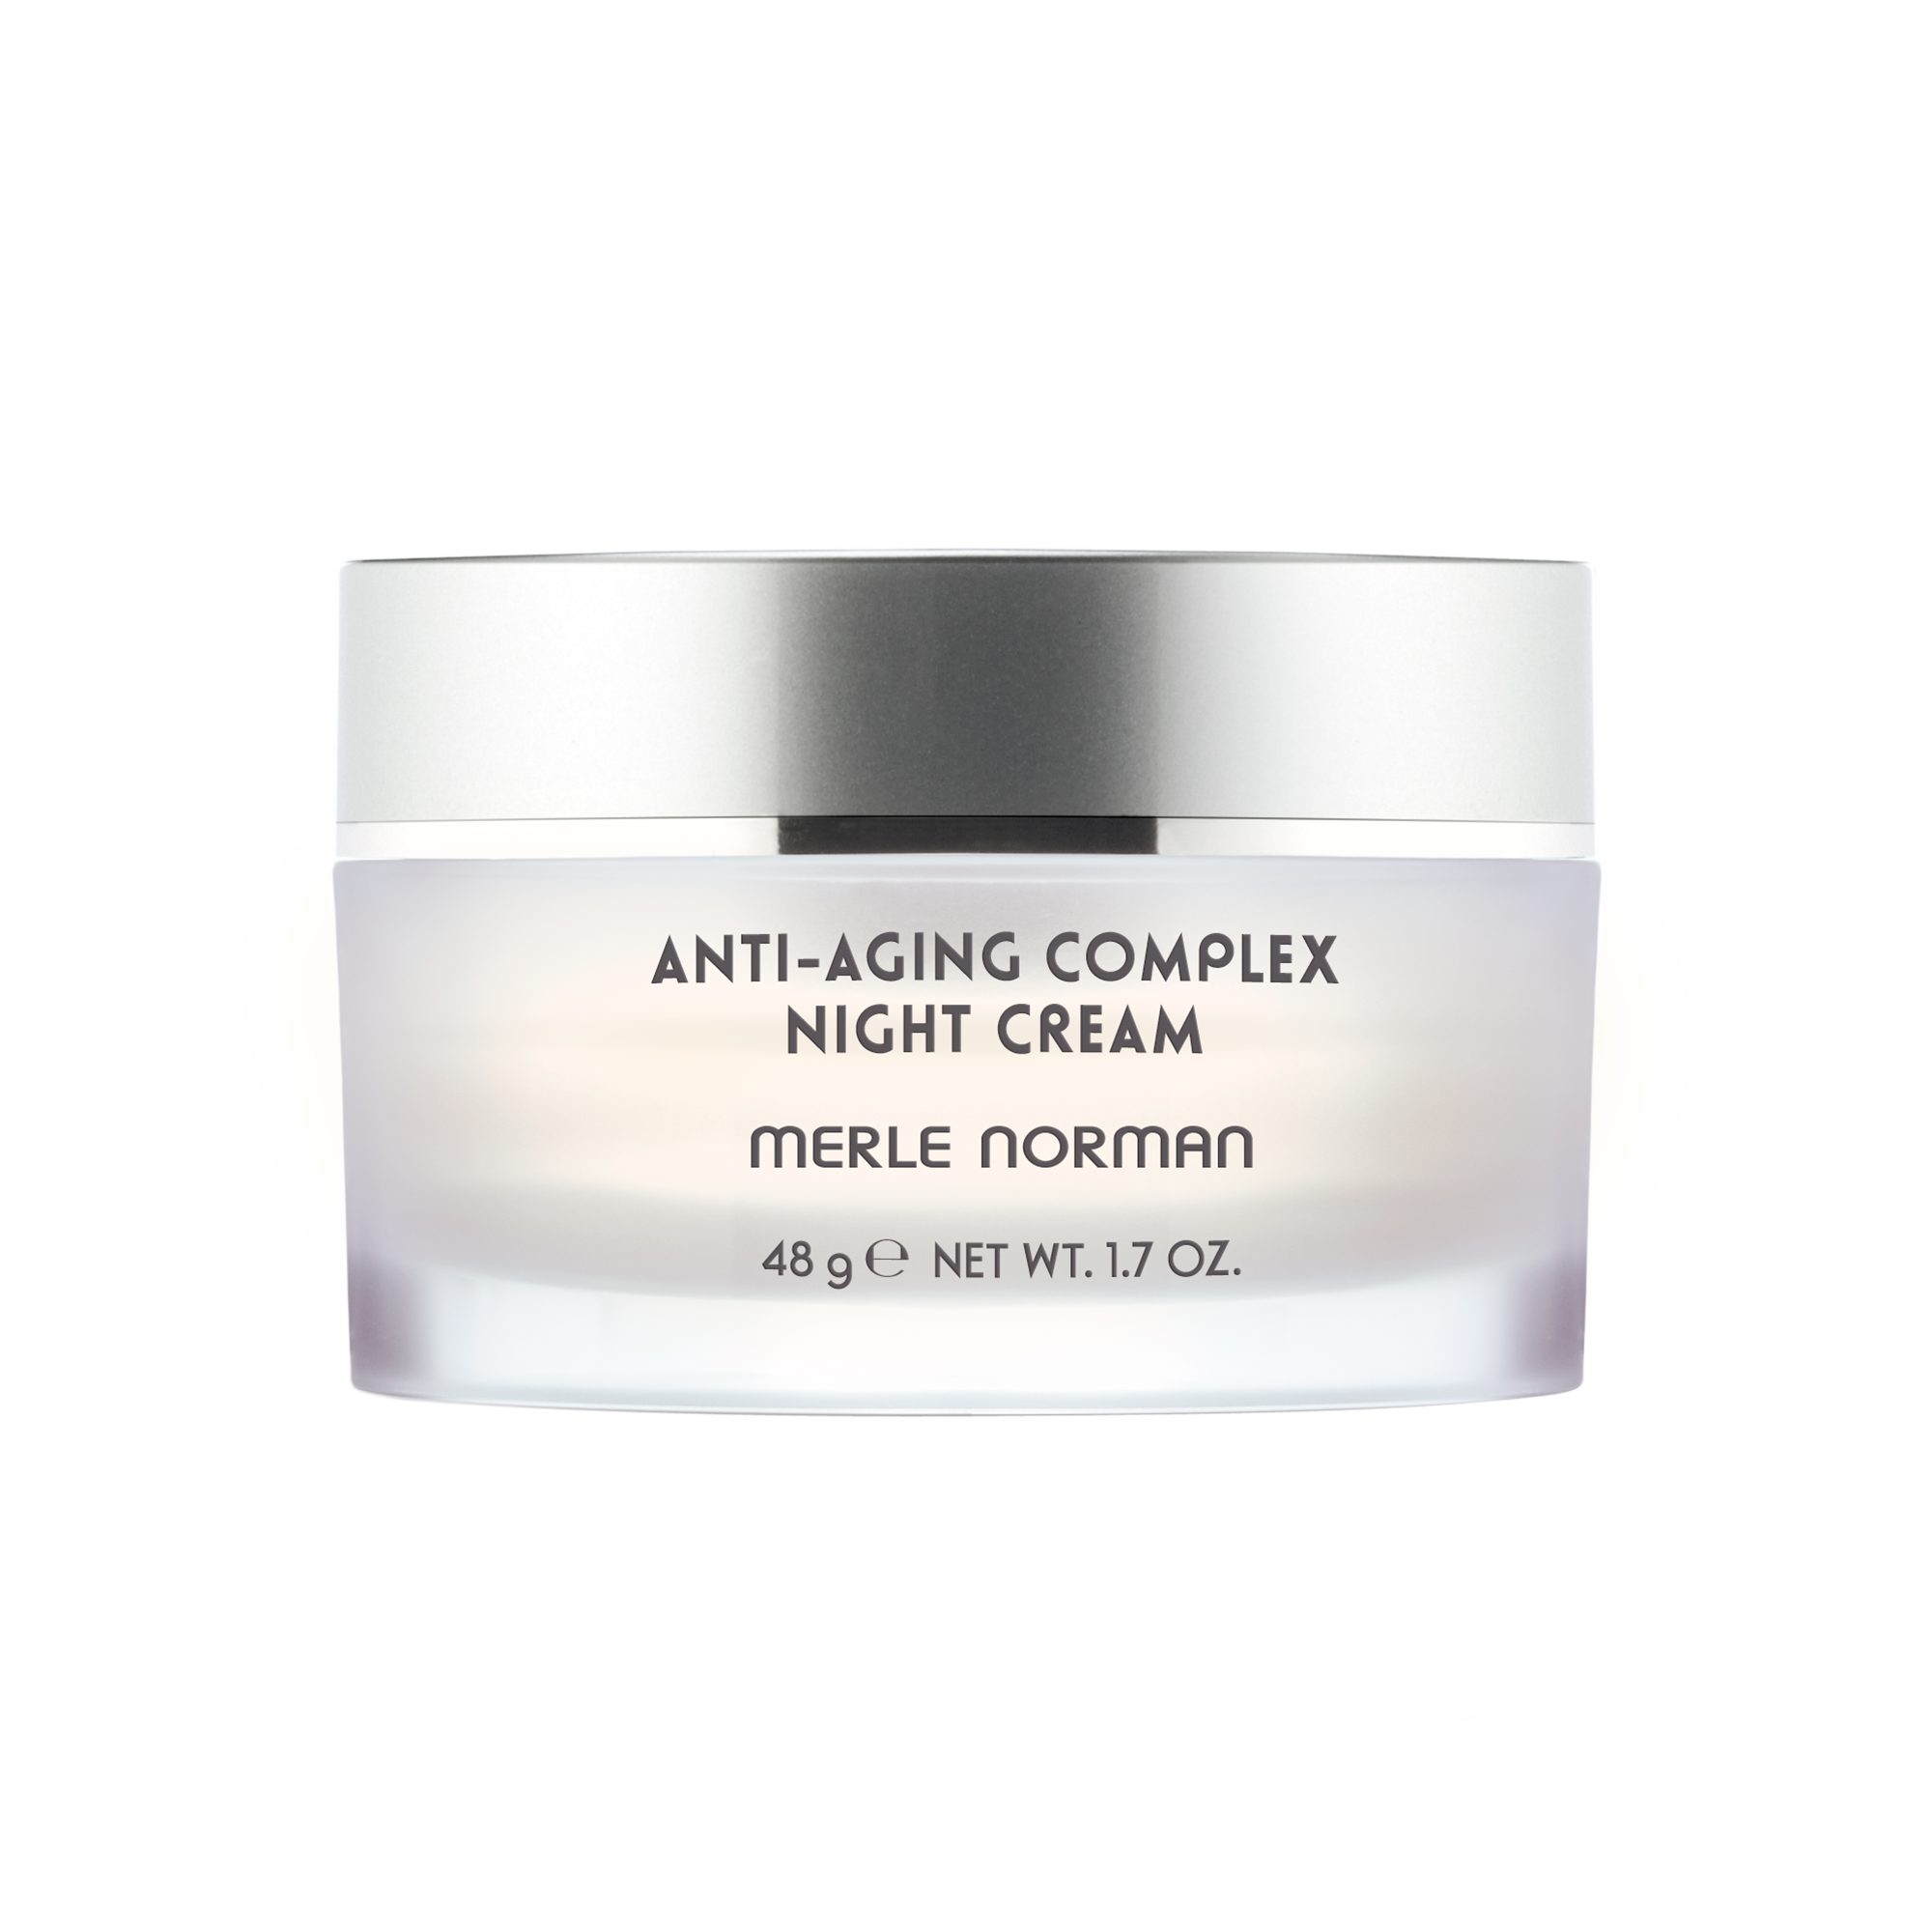 Anti-Aging Complex Night Cream